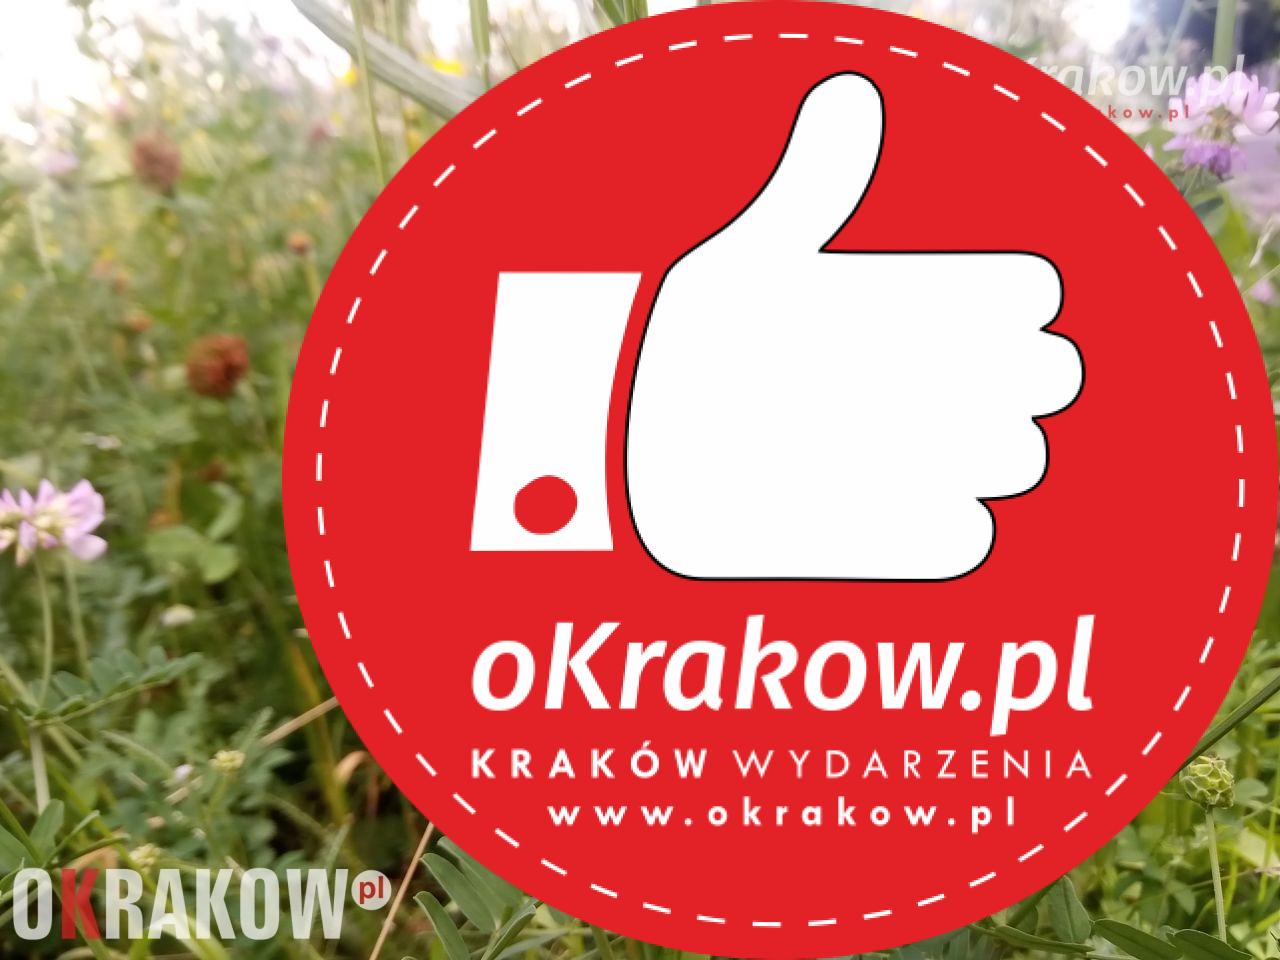 krakow - Rośliny, zwierzęta i my, czyli o krakowskich kwietnych łąkach